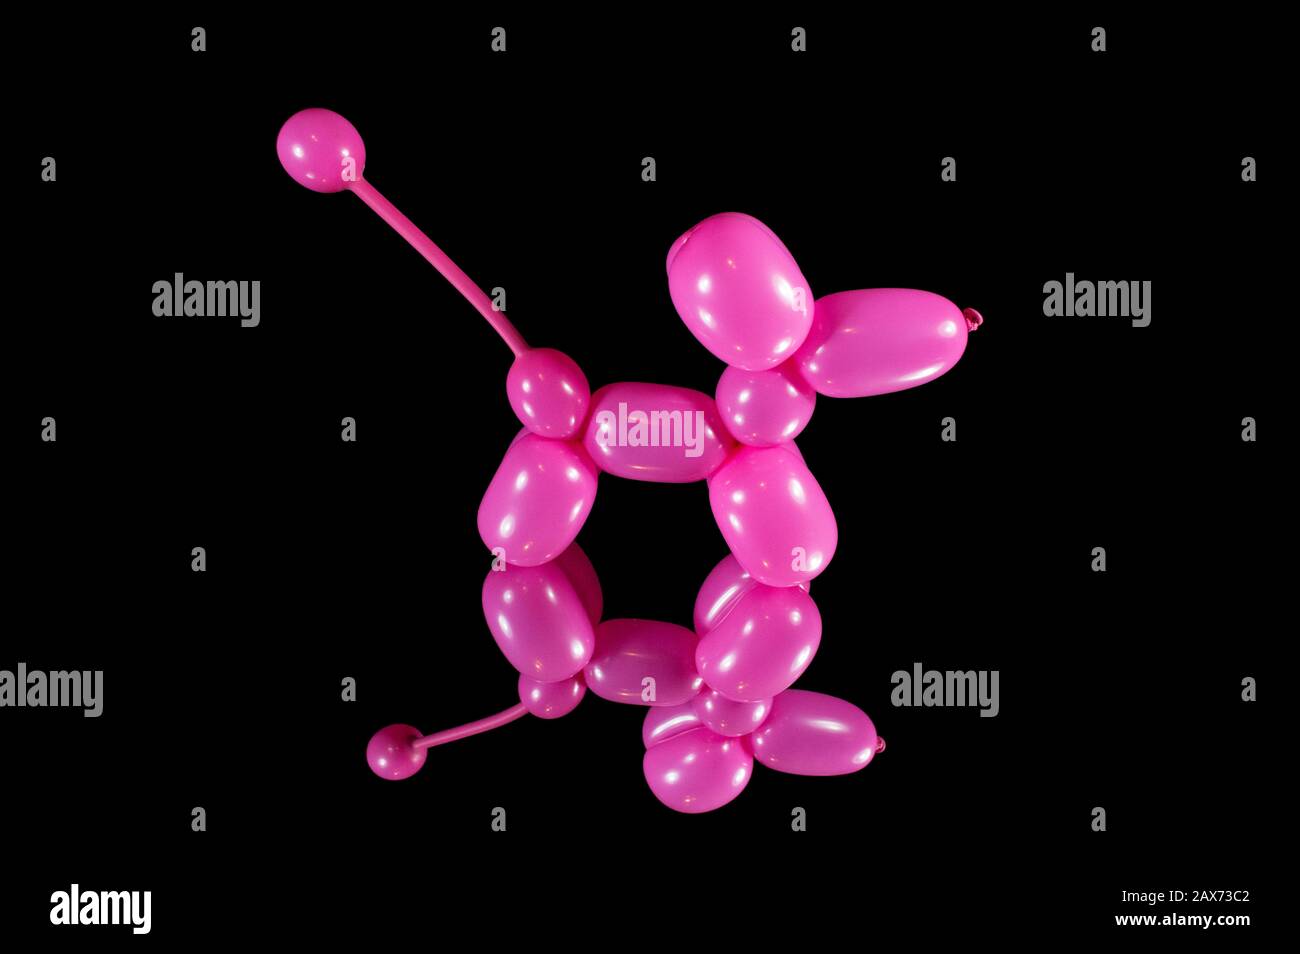 Süßer, pinkfarbener Ballontier-Pudelhund, der mit einem Ballon verdreht wurde, der von einem Entertainer auf einer Kindergeburtstagsfeier veranstaltet wurde. Stockfoto